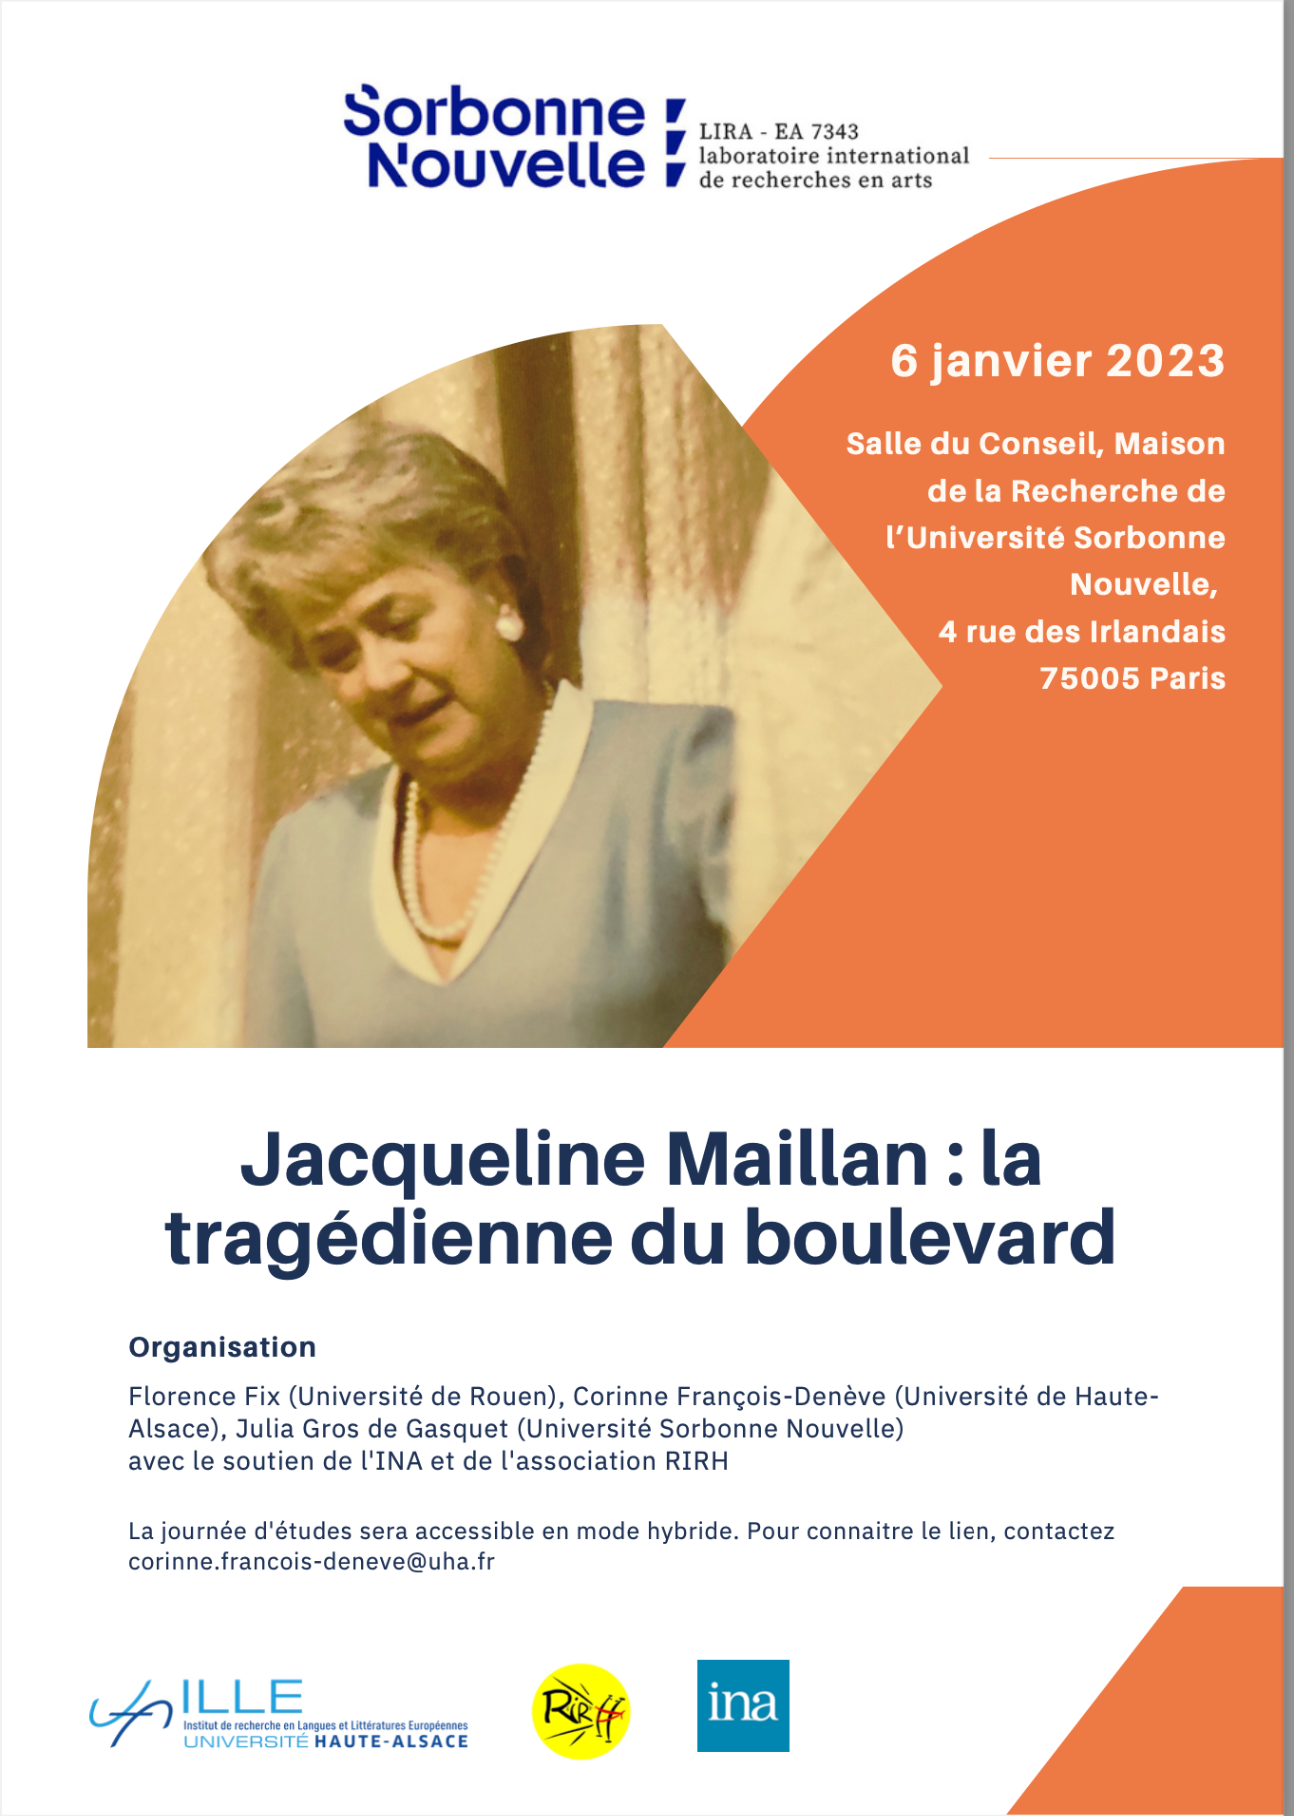 Jacqueline Maillan, la tragédienne du boulevard (Sorbonne nouvelle)